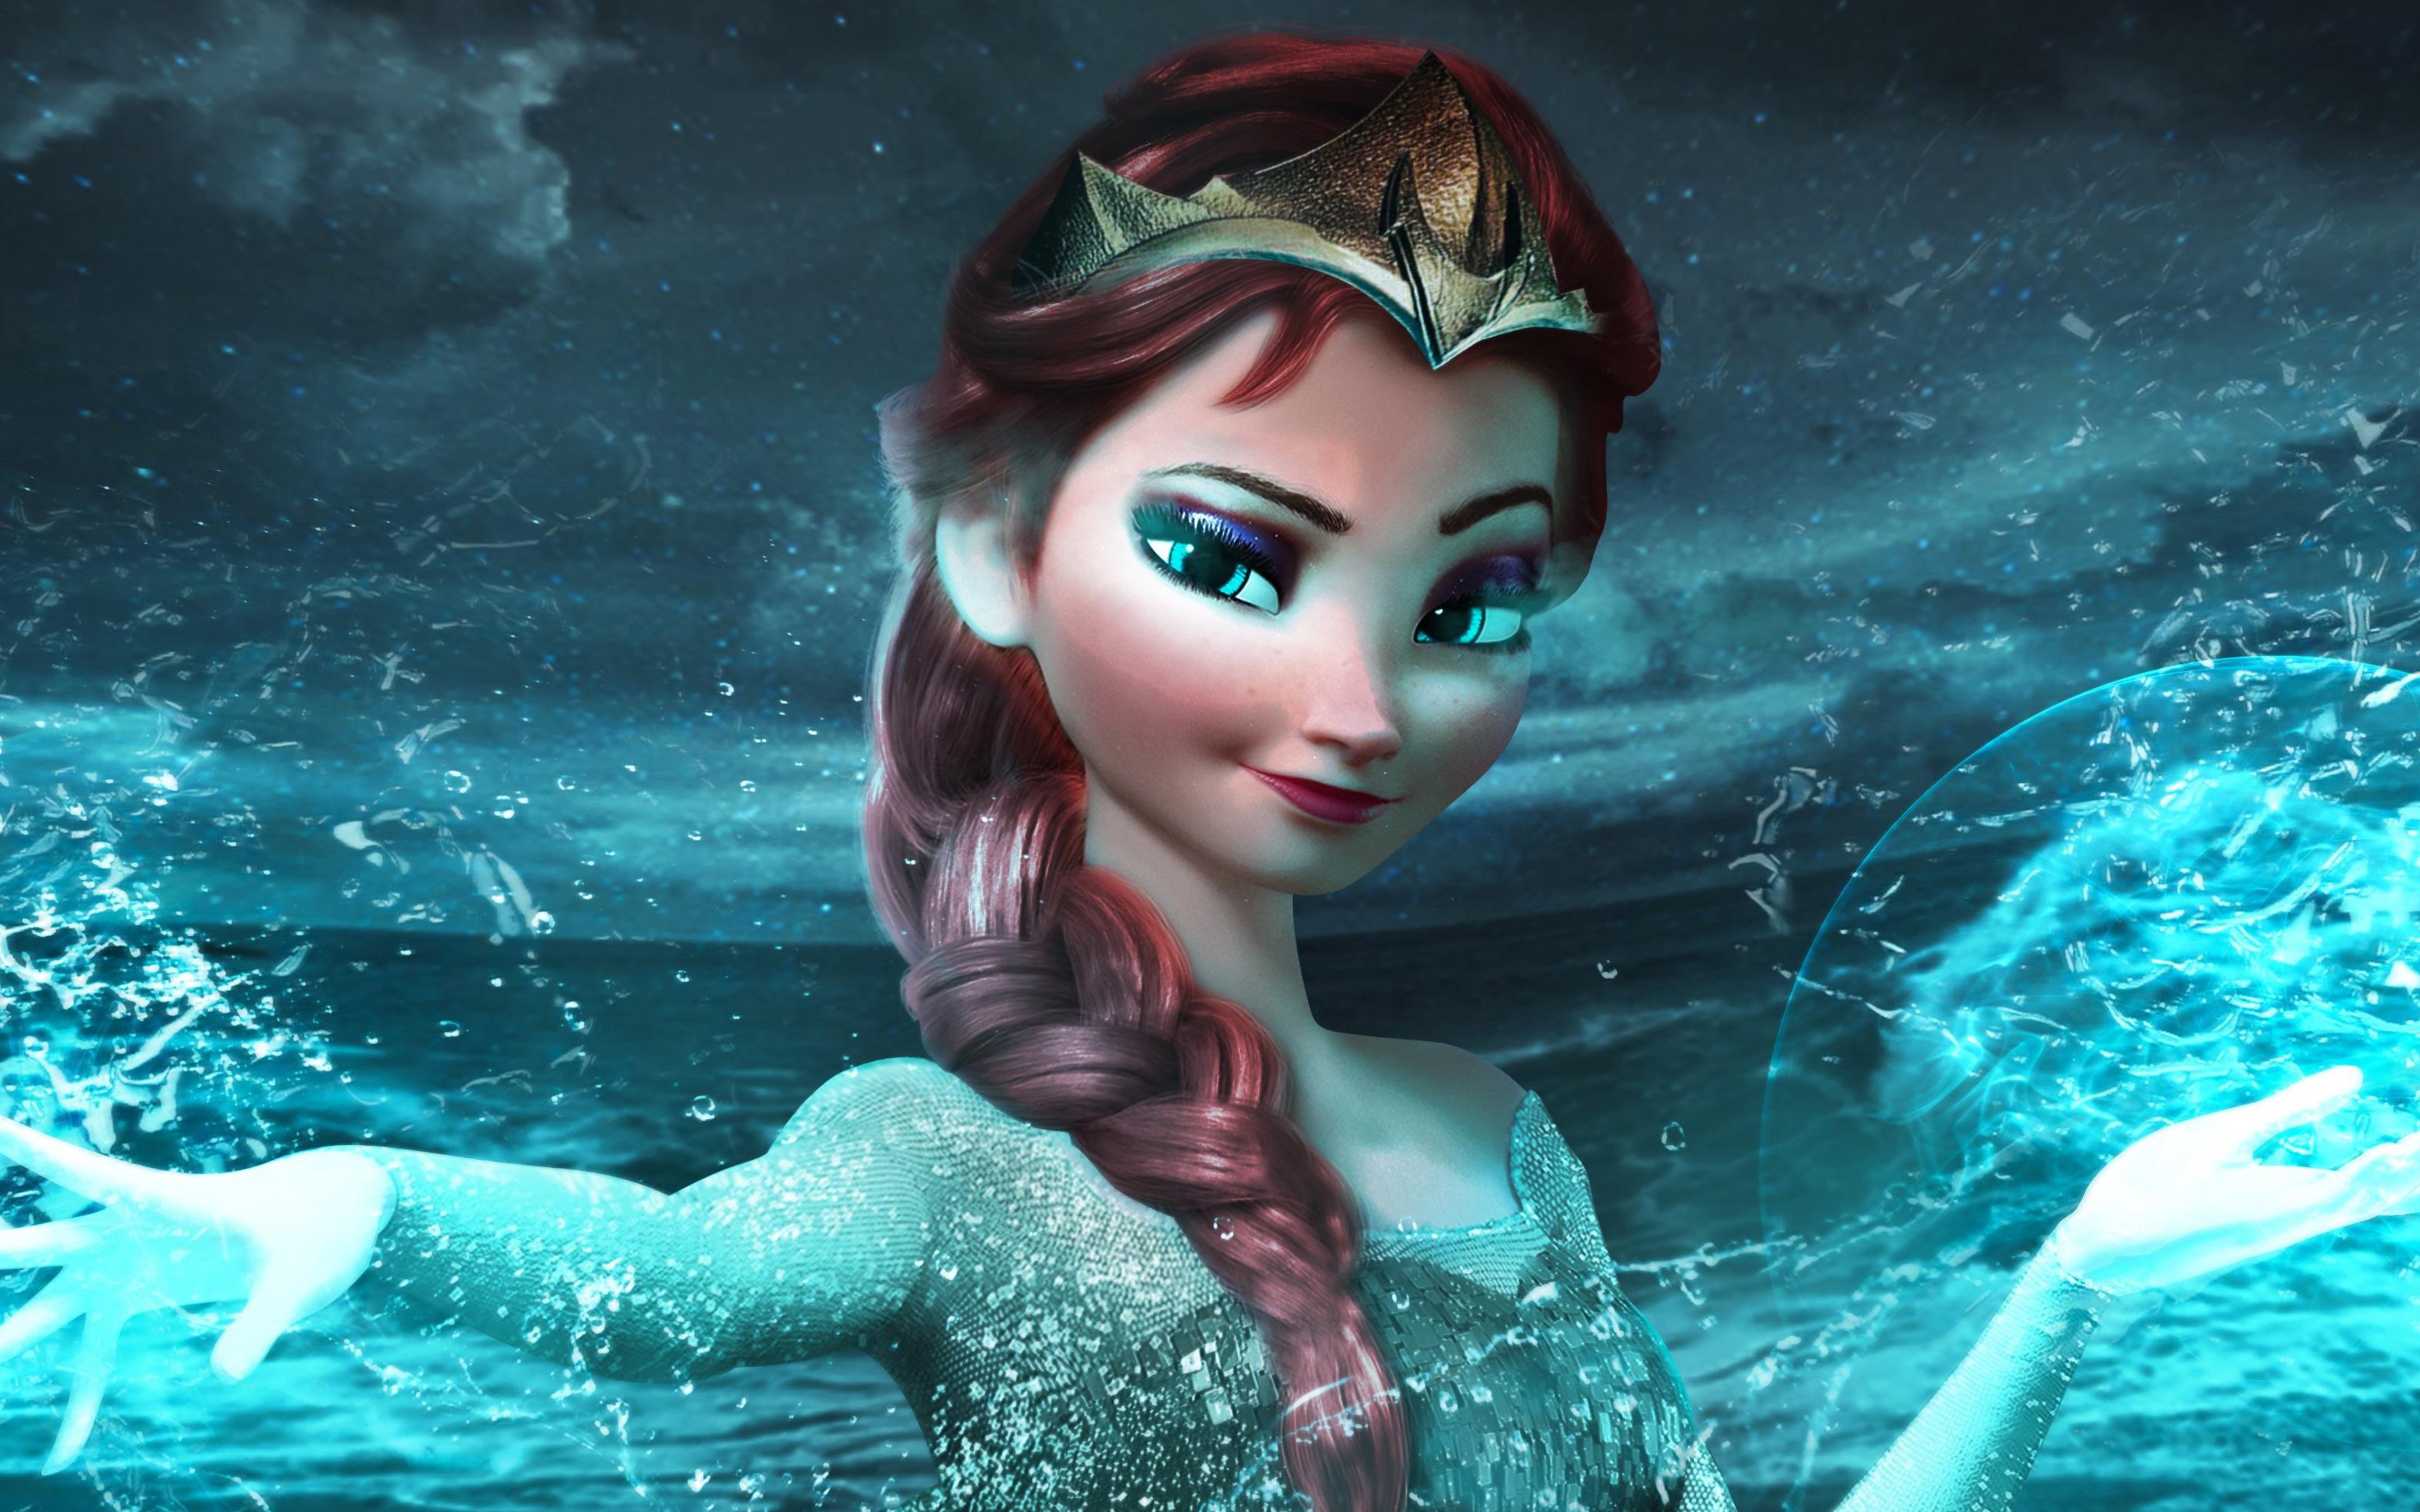 Fondos de pantalla Elsa con cabello castaño